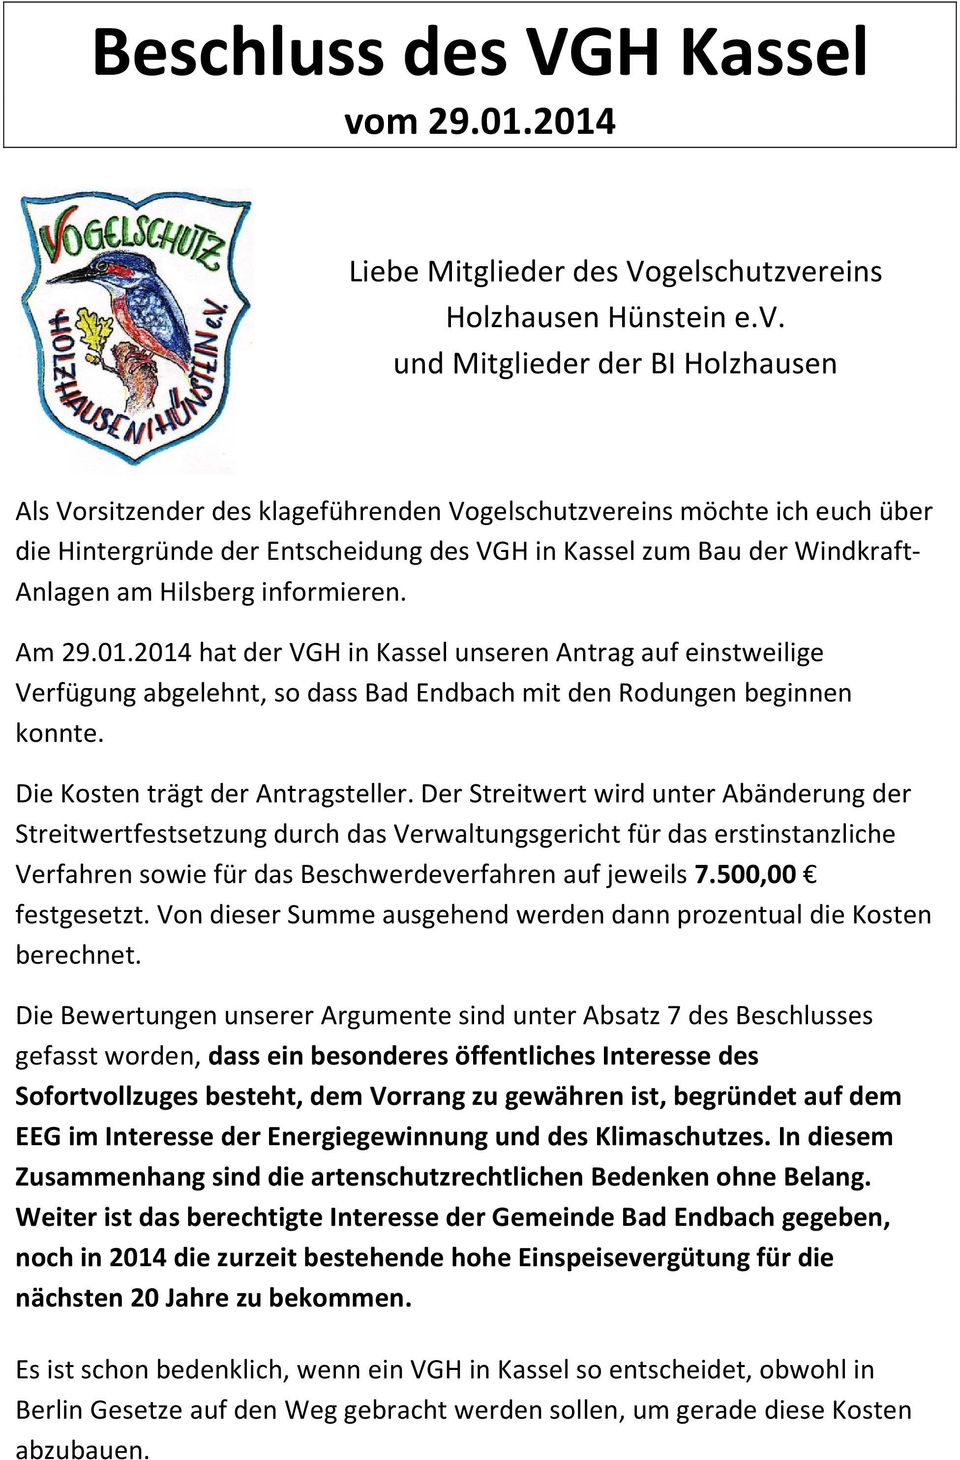 Am 29.01.2014 hat der VGH in Kassel unseren Antrag auf einstweilige Verfügung abgelehnt, so dass Bad Endbach mit den Rodungen beginnen konnte. Die Kosten trägt der Antragsteller.